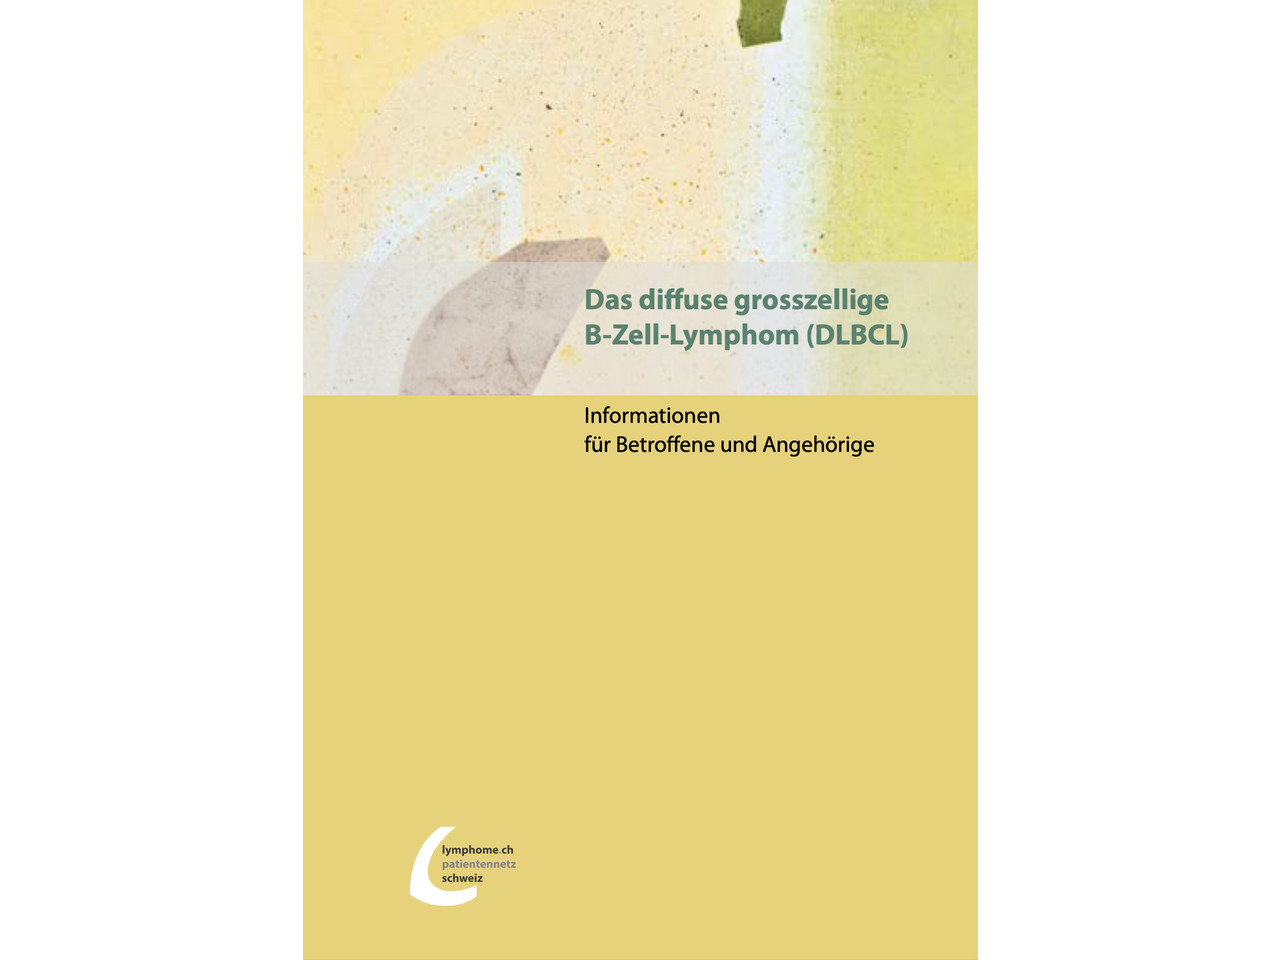 NEU: Das diffuse grosszellige B-Zell-Lymphom (DLBCL) - Informationen für Betroffene und Angehörige (in Deutsch, Französisch und Italienisch)